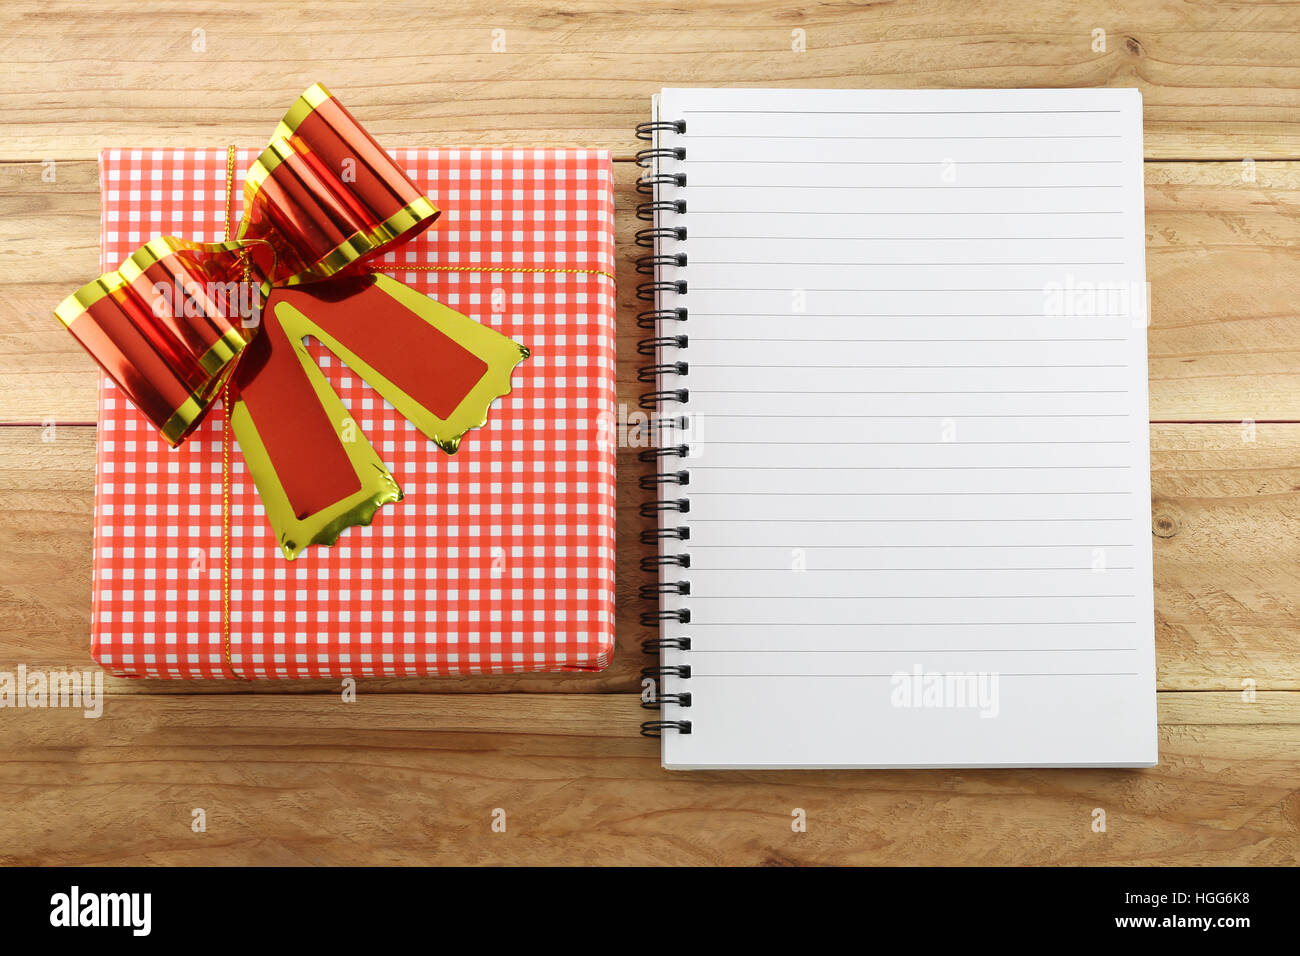 Caja de regalo roja con vacío libro blanco sobre fondo de madera,concepto de Navidad y día importante. Foto de stock